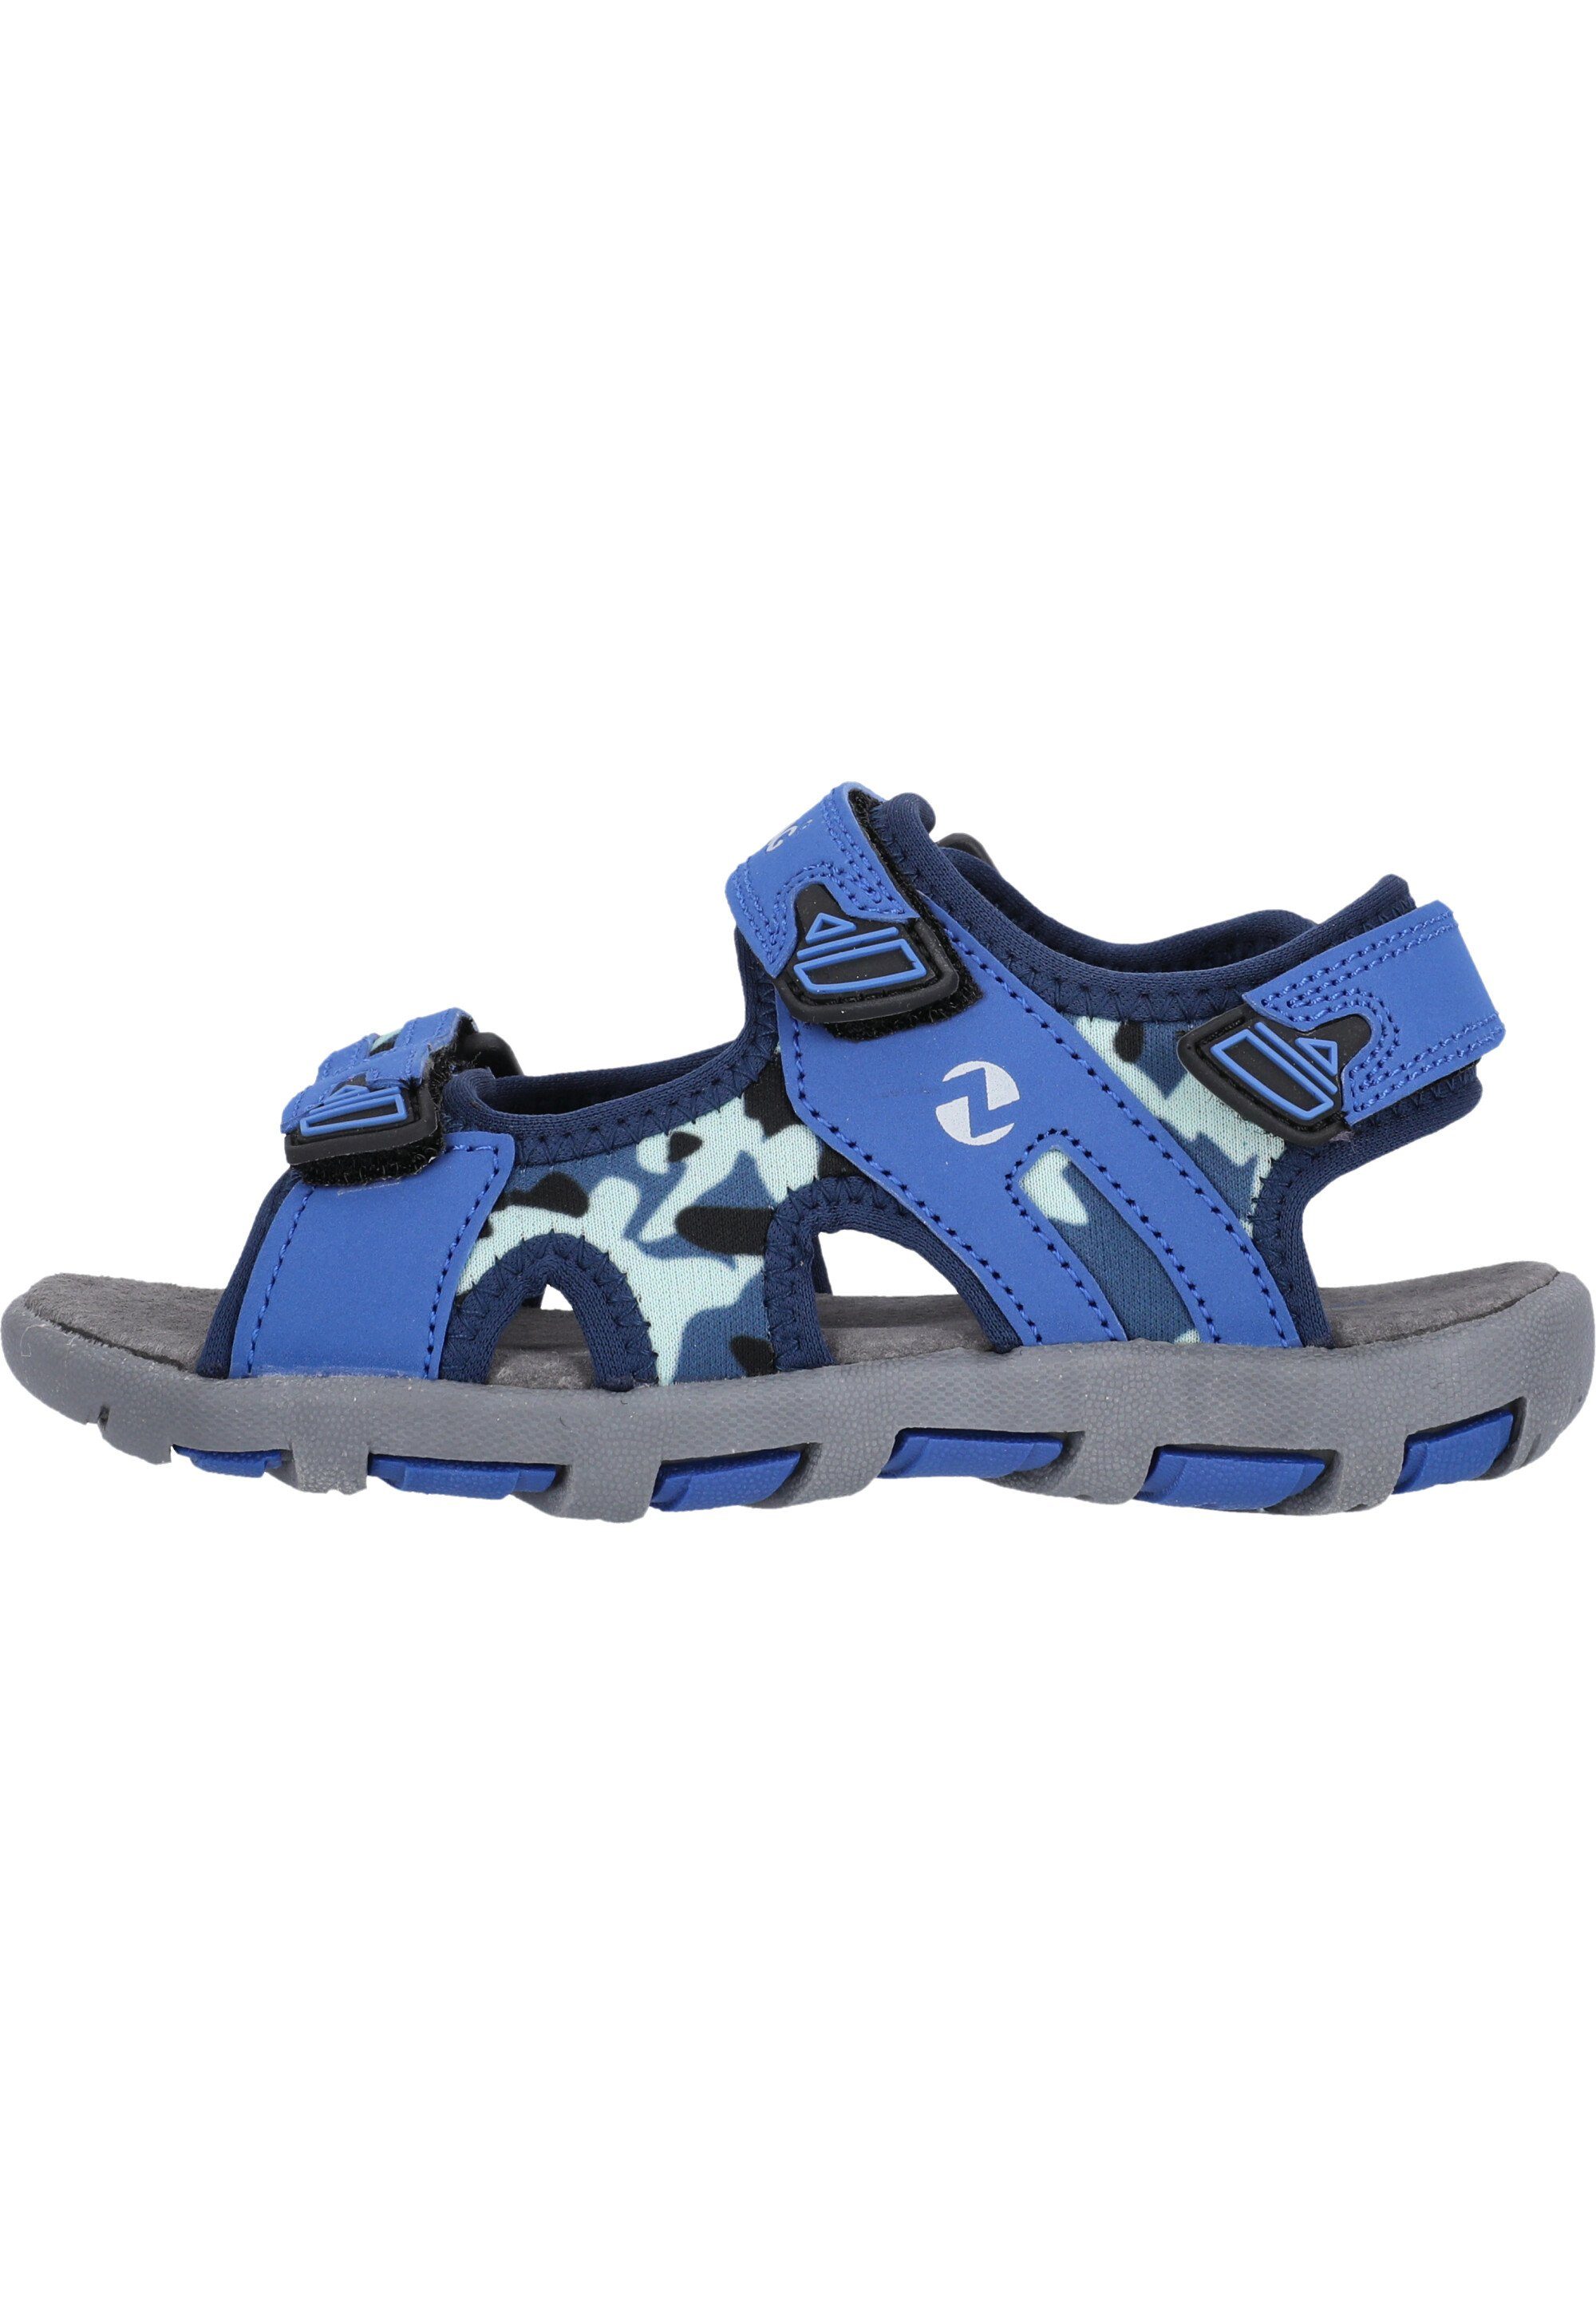 ZIGZAG Tanaka Sandale mit blau-blau praktischem Klettverschluss